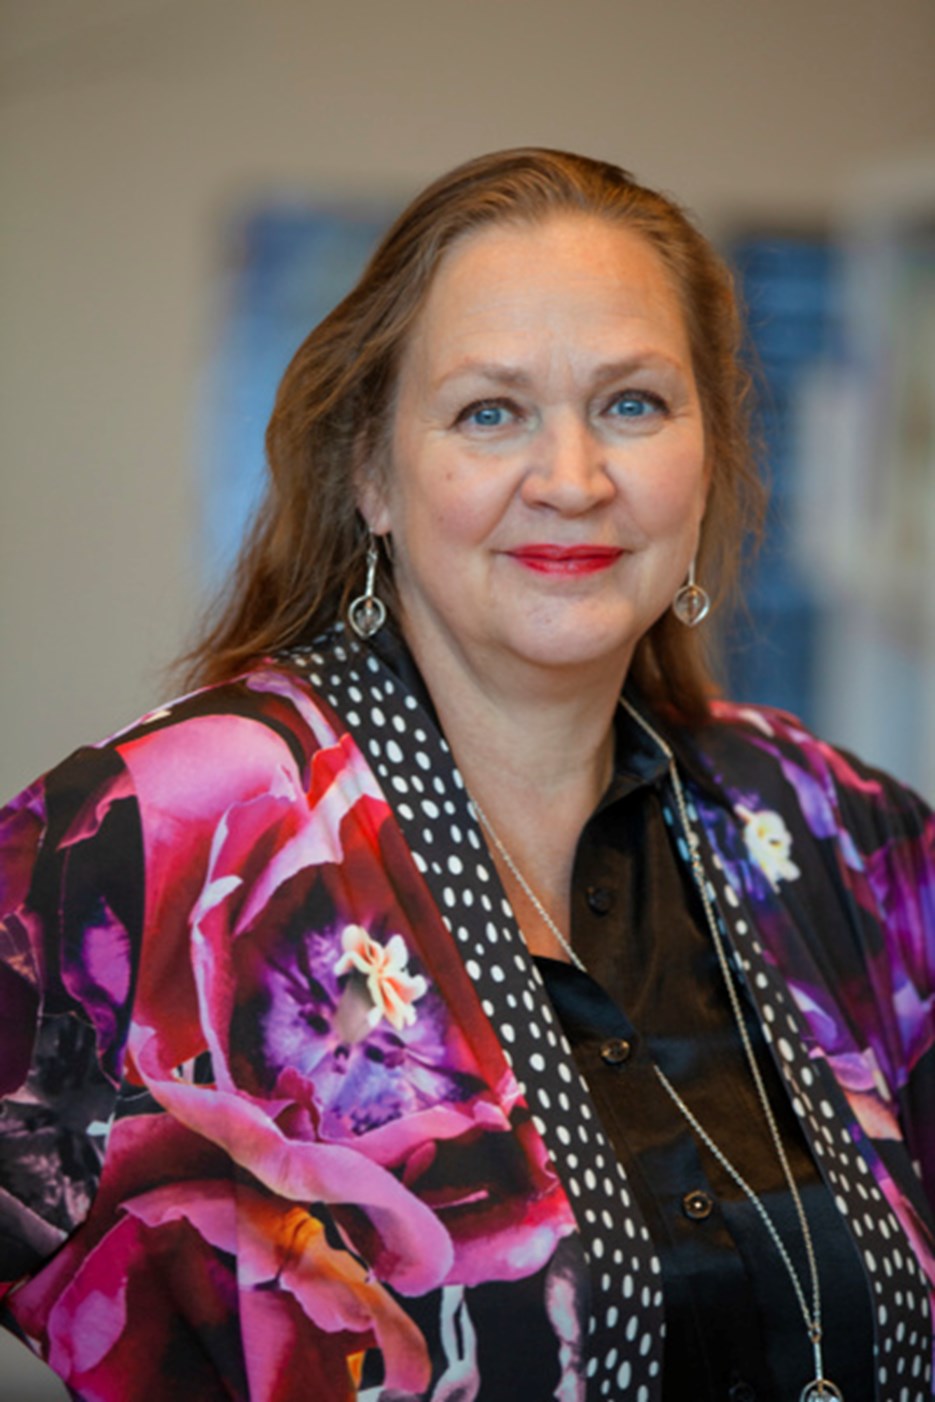 Annelie Bränström-Öhman